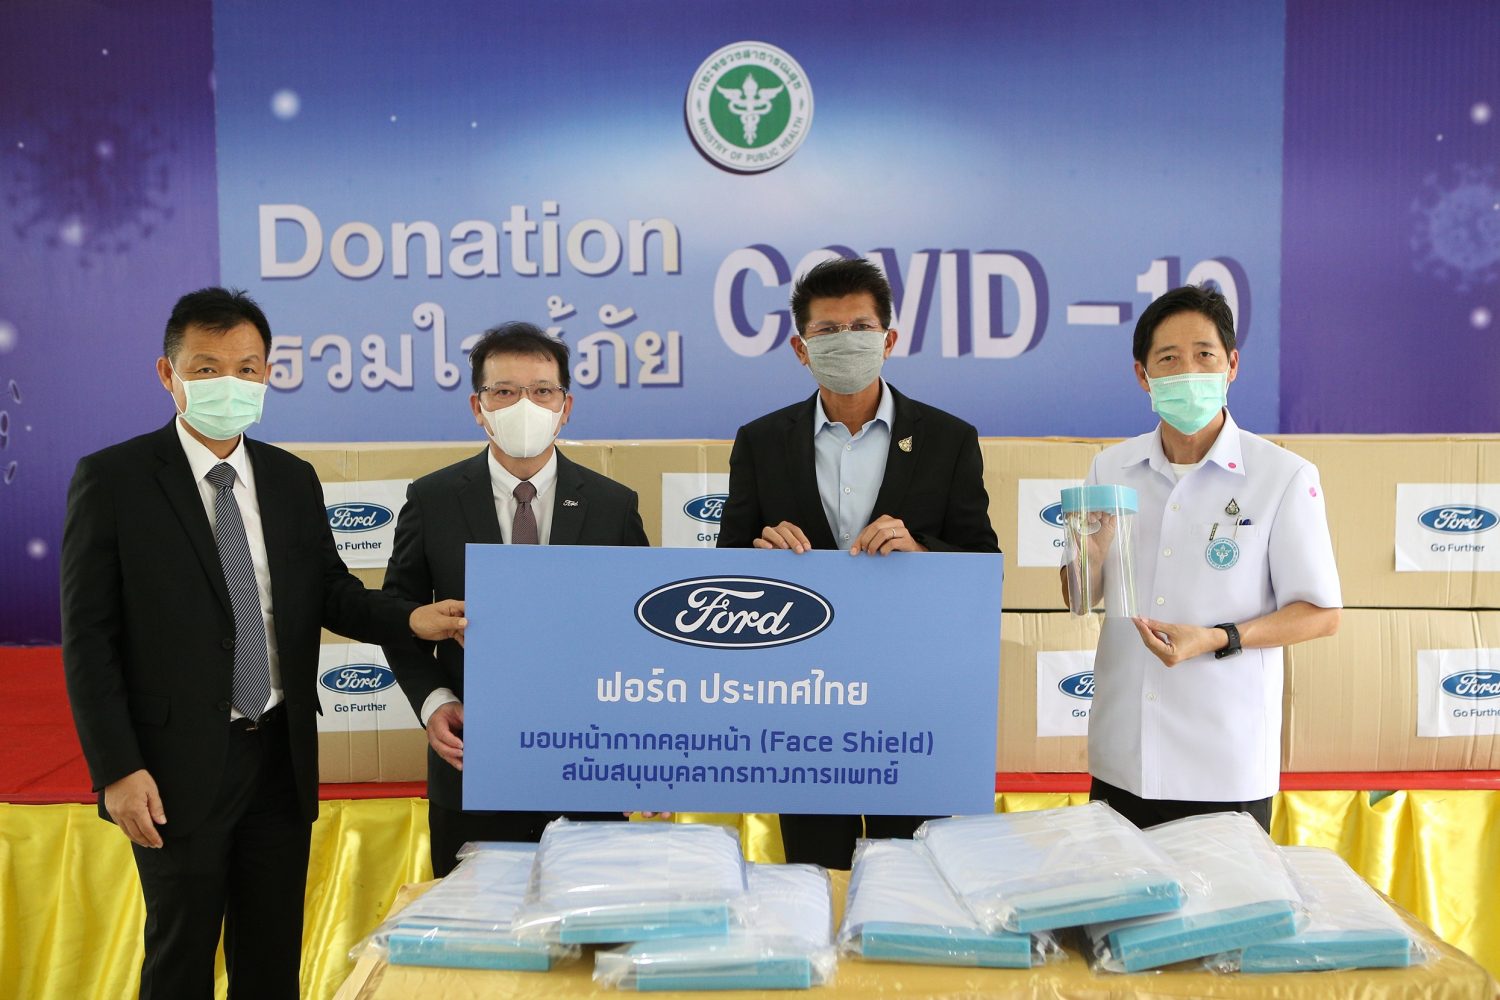 อาสาสมัครพนักงานฟอร์ดในประเทศไทยร่วมผลิตหน้ากาก ป้องกันใบหน้า 100,000 ชิ้น เพื่อบุคลากรทางการแพทย์และสนับสนุนหน่วยงานต่างๆ รับมือโควิด-19